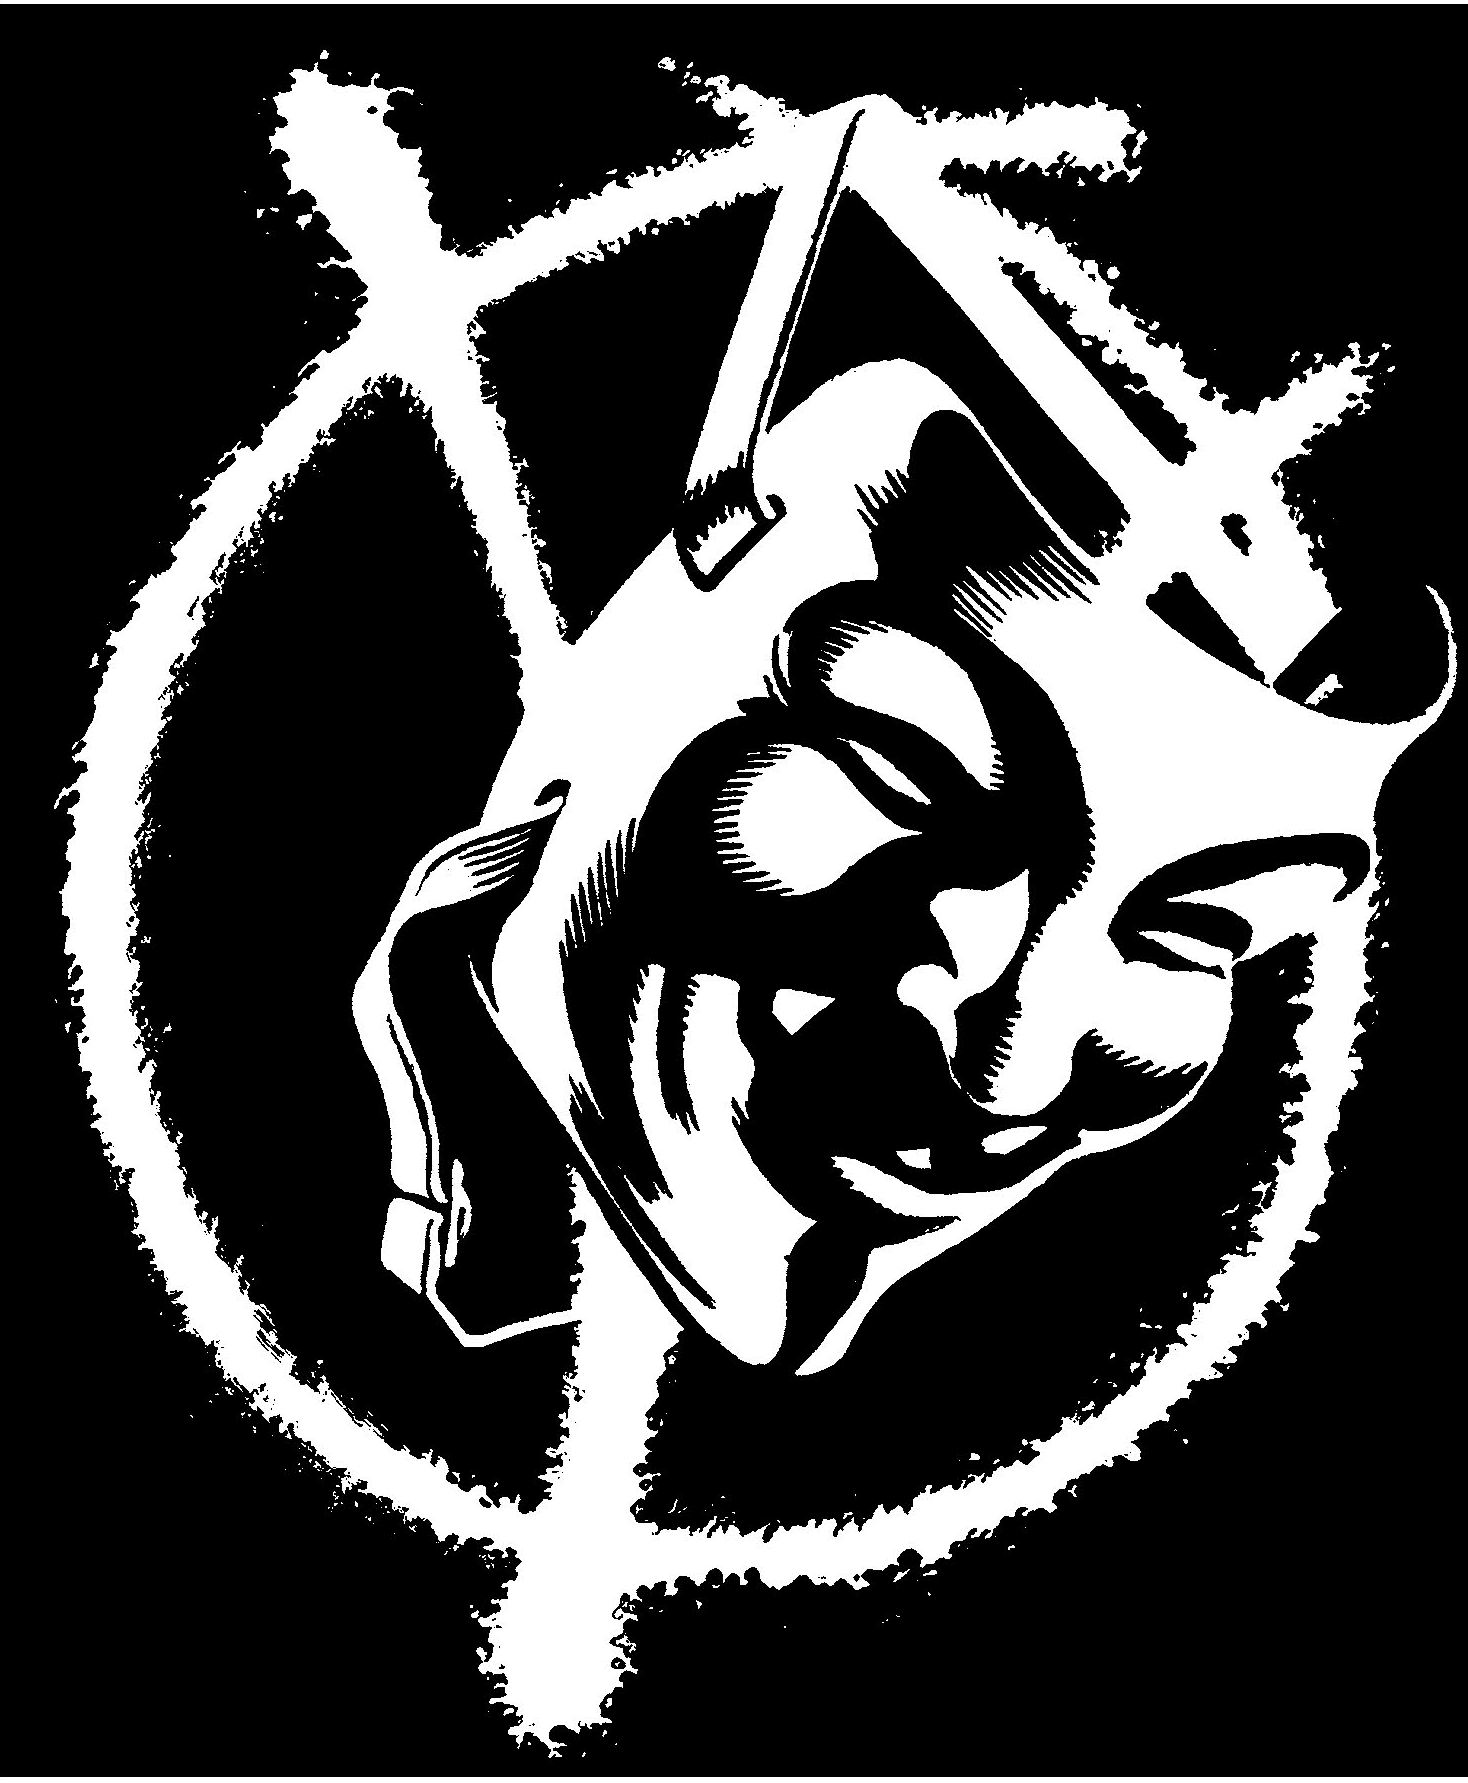 Leonardo Rizzi - Tradurre a fumetti 1: V for Vendetta - Senzaudio